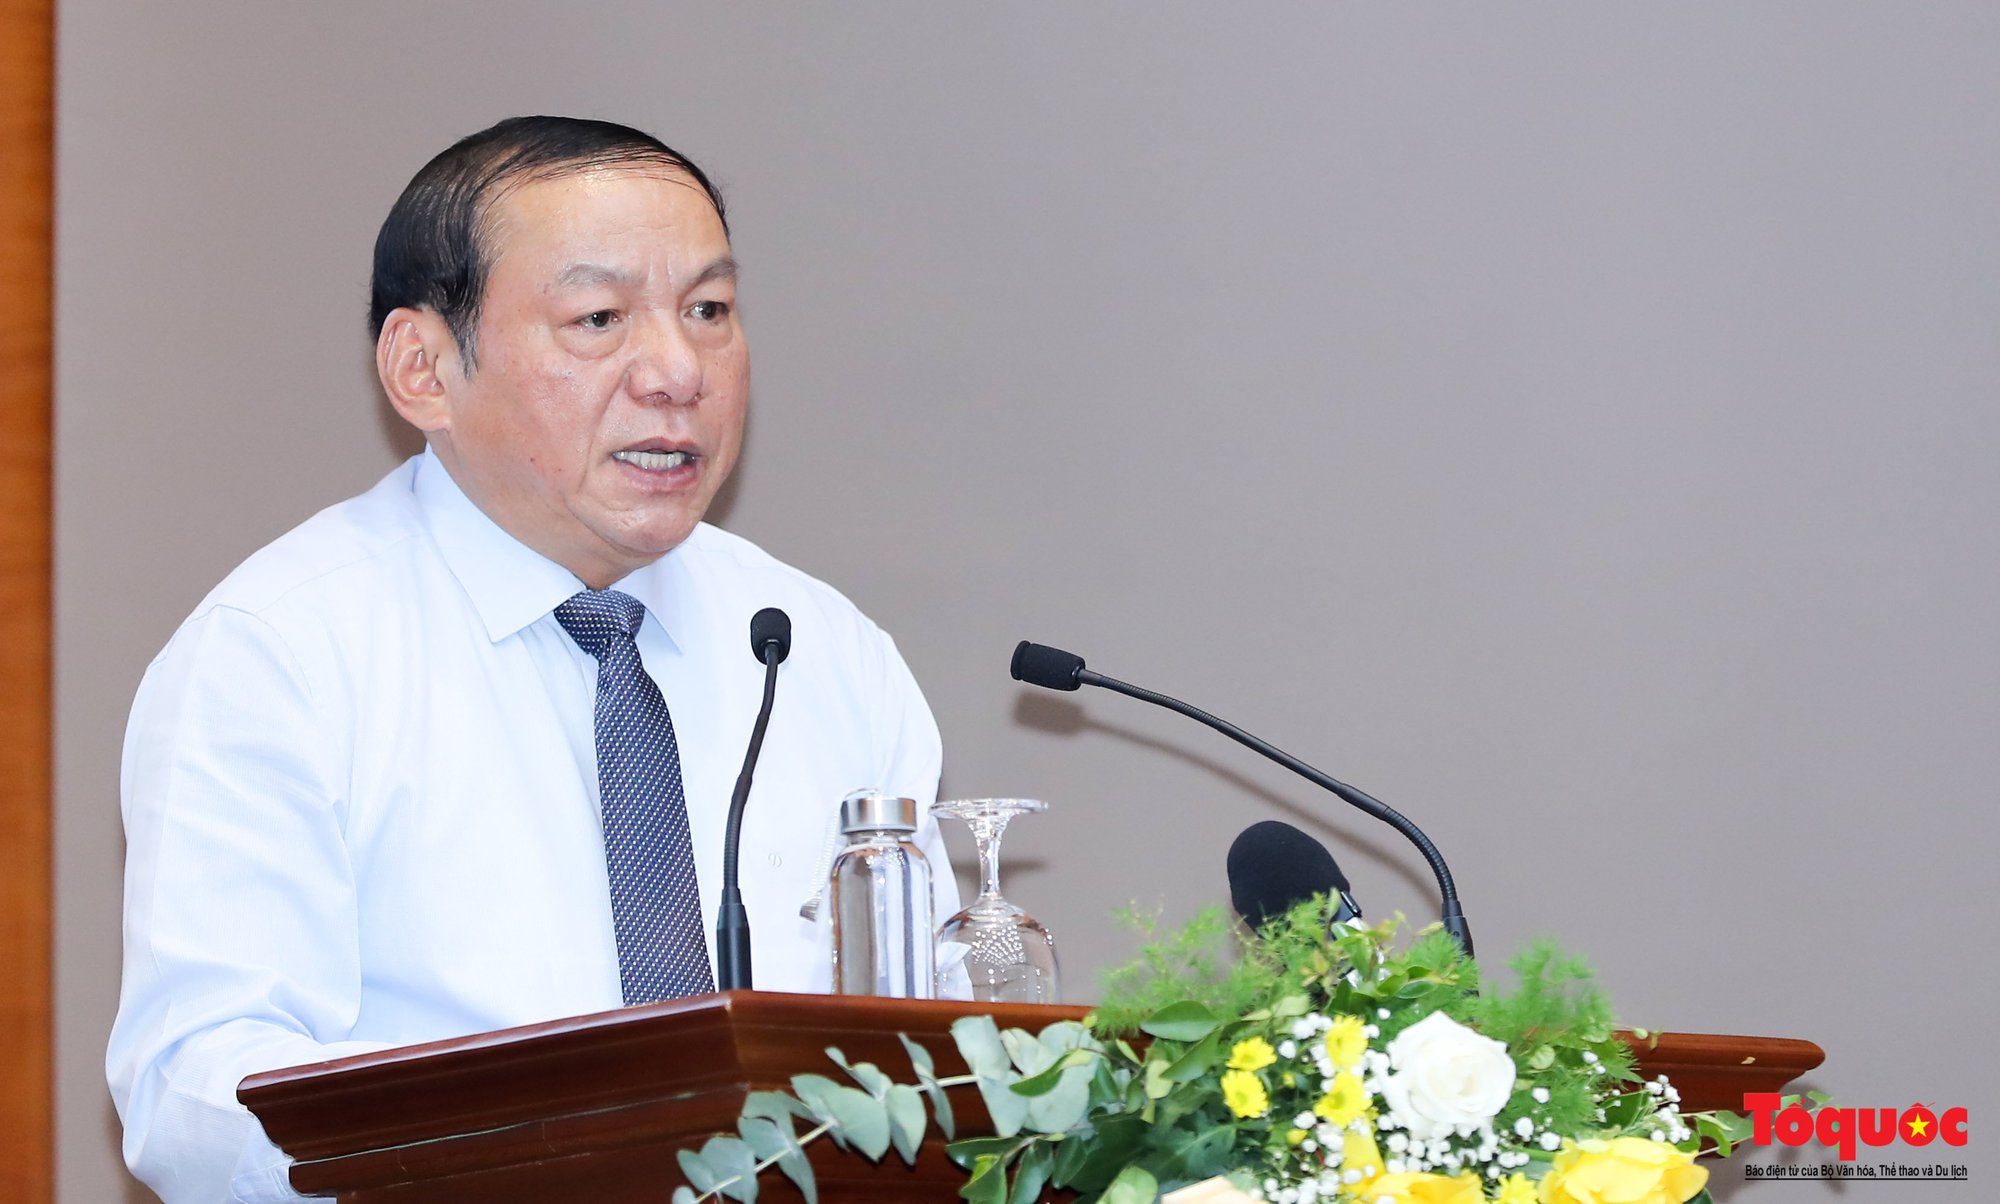 Bộ trưởng Nguyễn Văn Hùng: Sức mạnh mềm của văn hóa sẽ lan tỏa và phổ biến pháp luật sâu sắc hơn